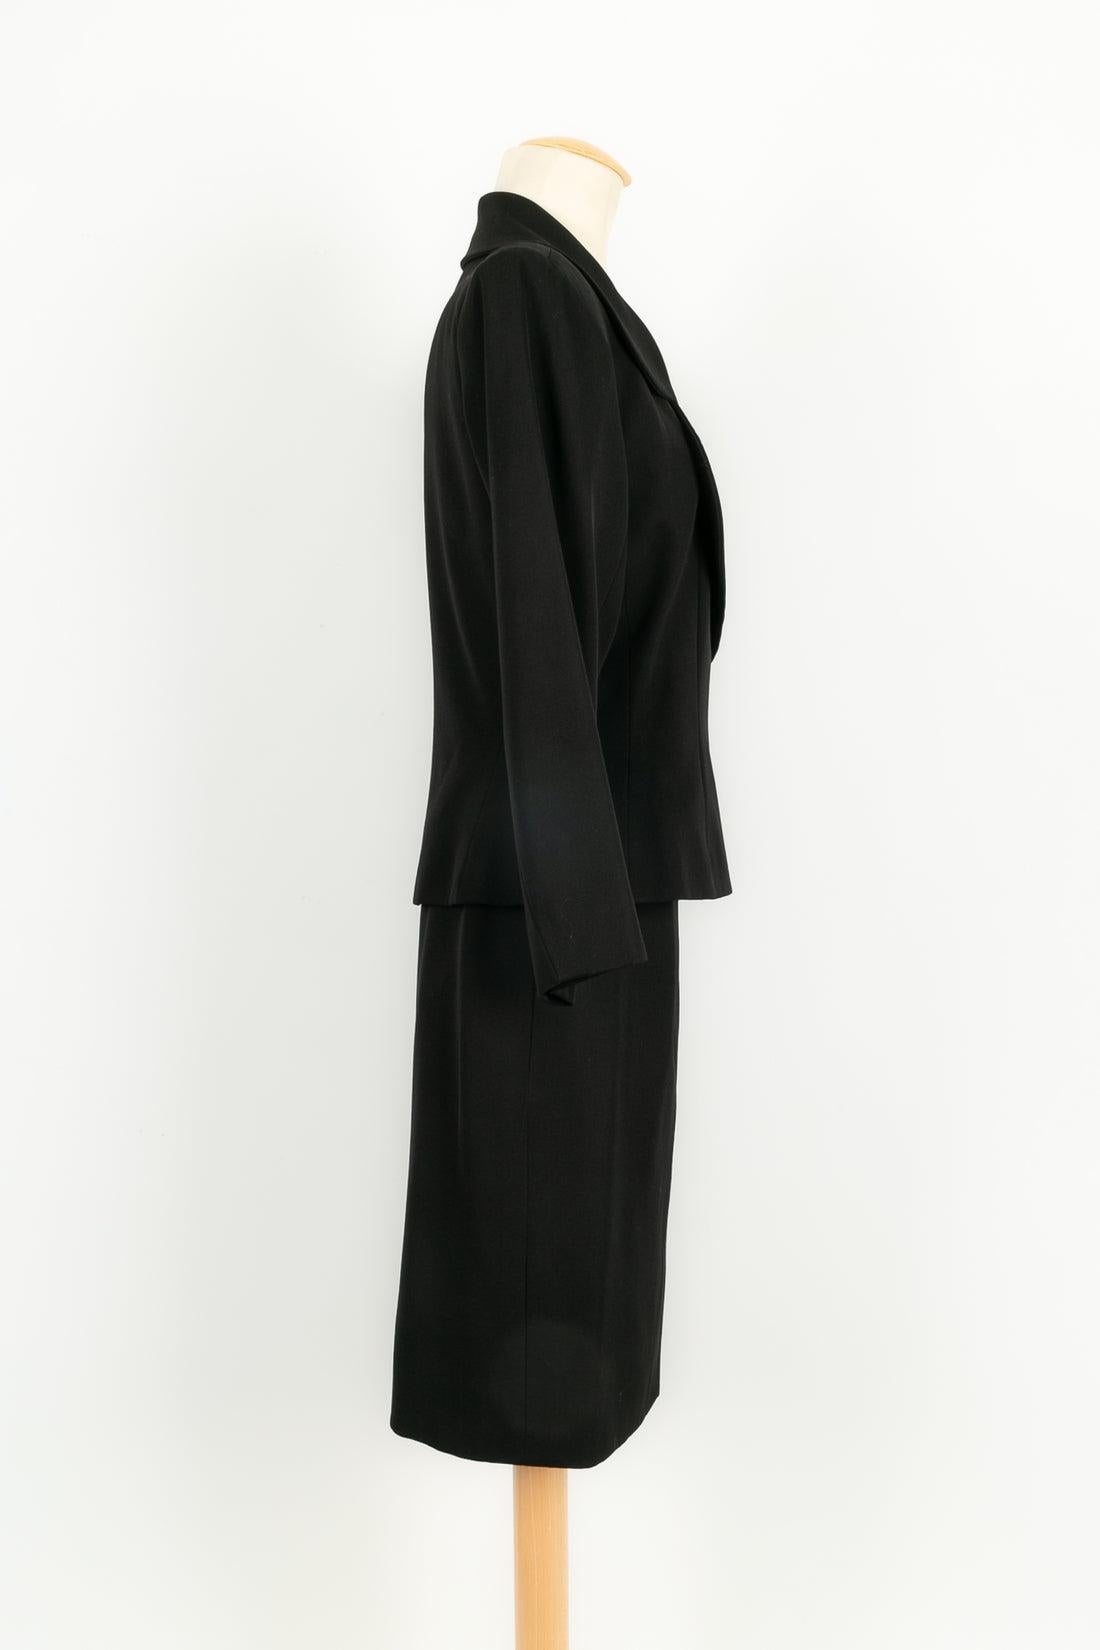 Yves Saint Laurent - (Fabriqué en France) Tailleur jupe noir. Taille 38FR.

Informations complémentaires : 
Dimensions : Veste : Largeur des épaules : 43 cm, Longueur des manches : 54 cm, Longueur : 57 cm 
Jupe : Taille : 35 cm, Longueur : 57